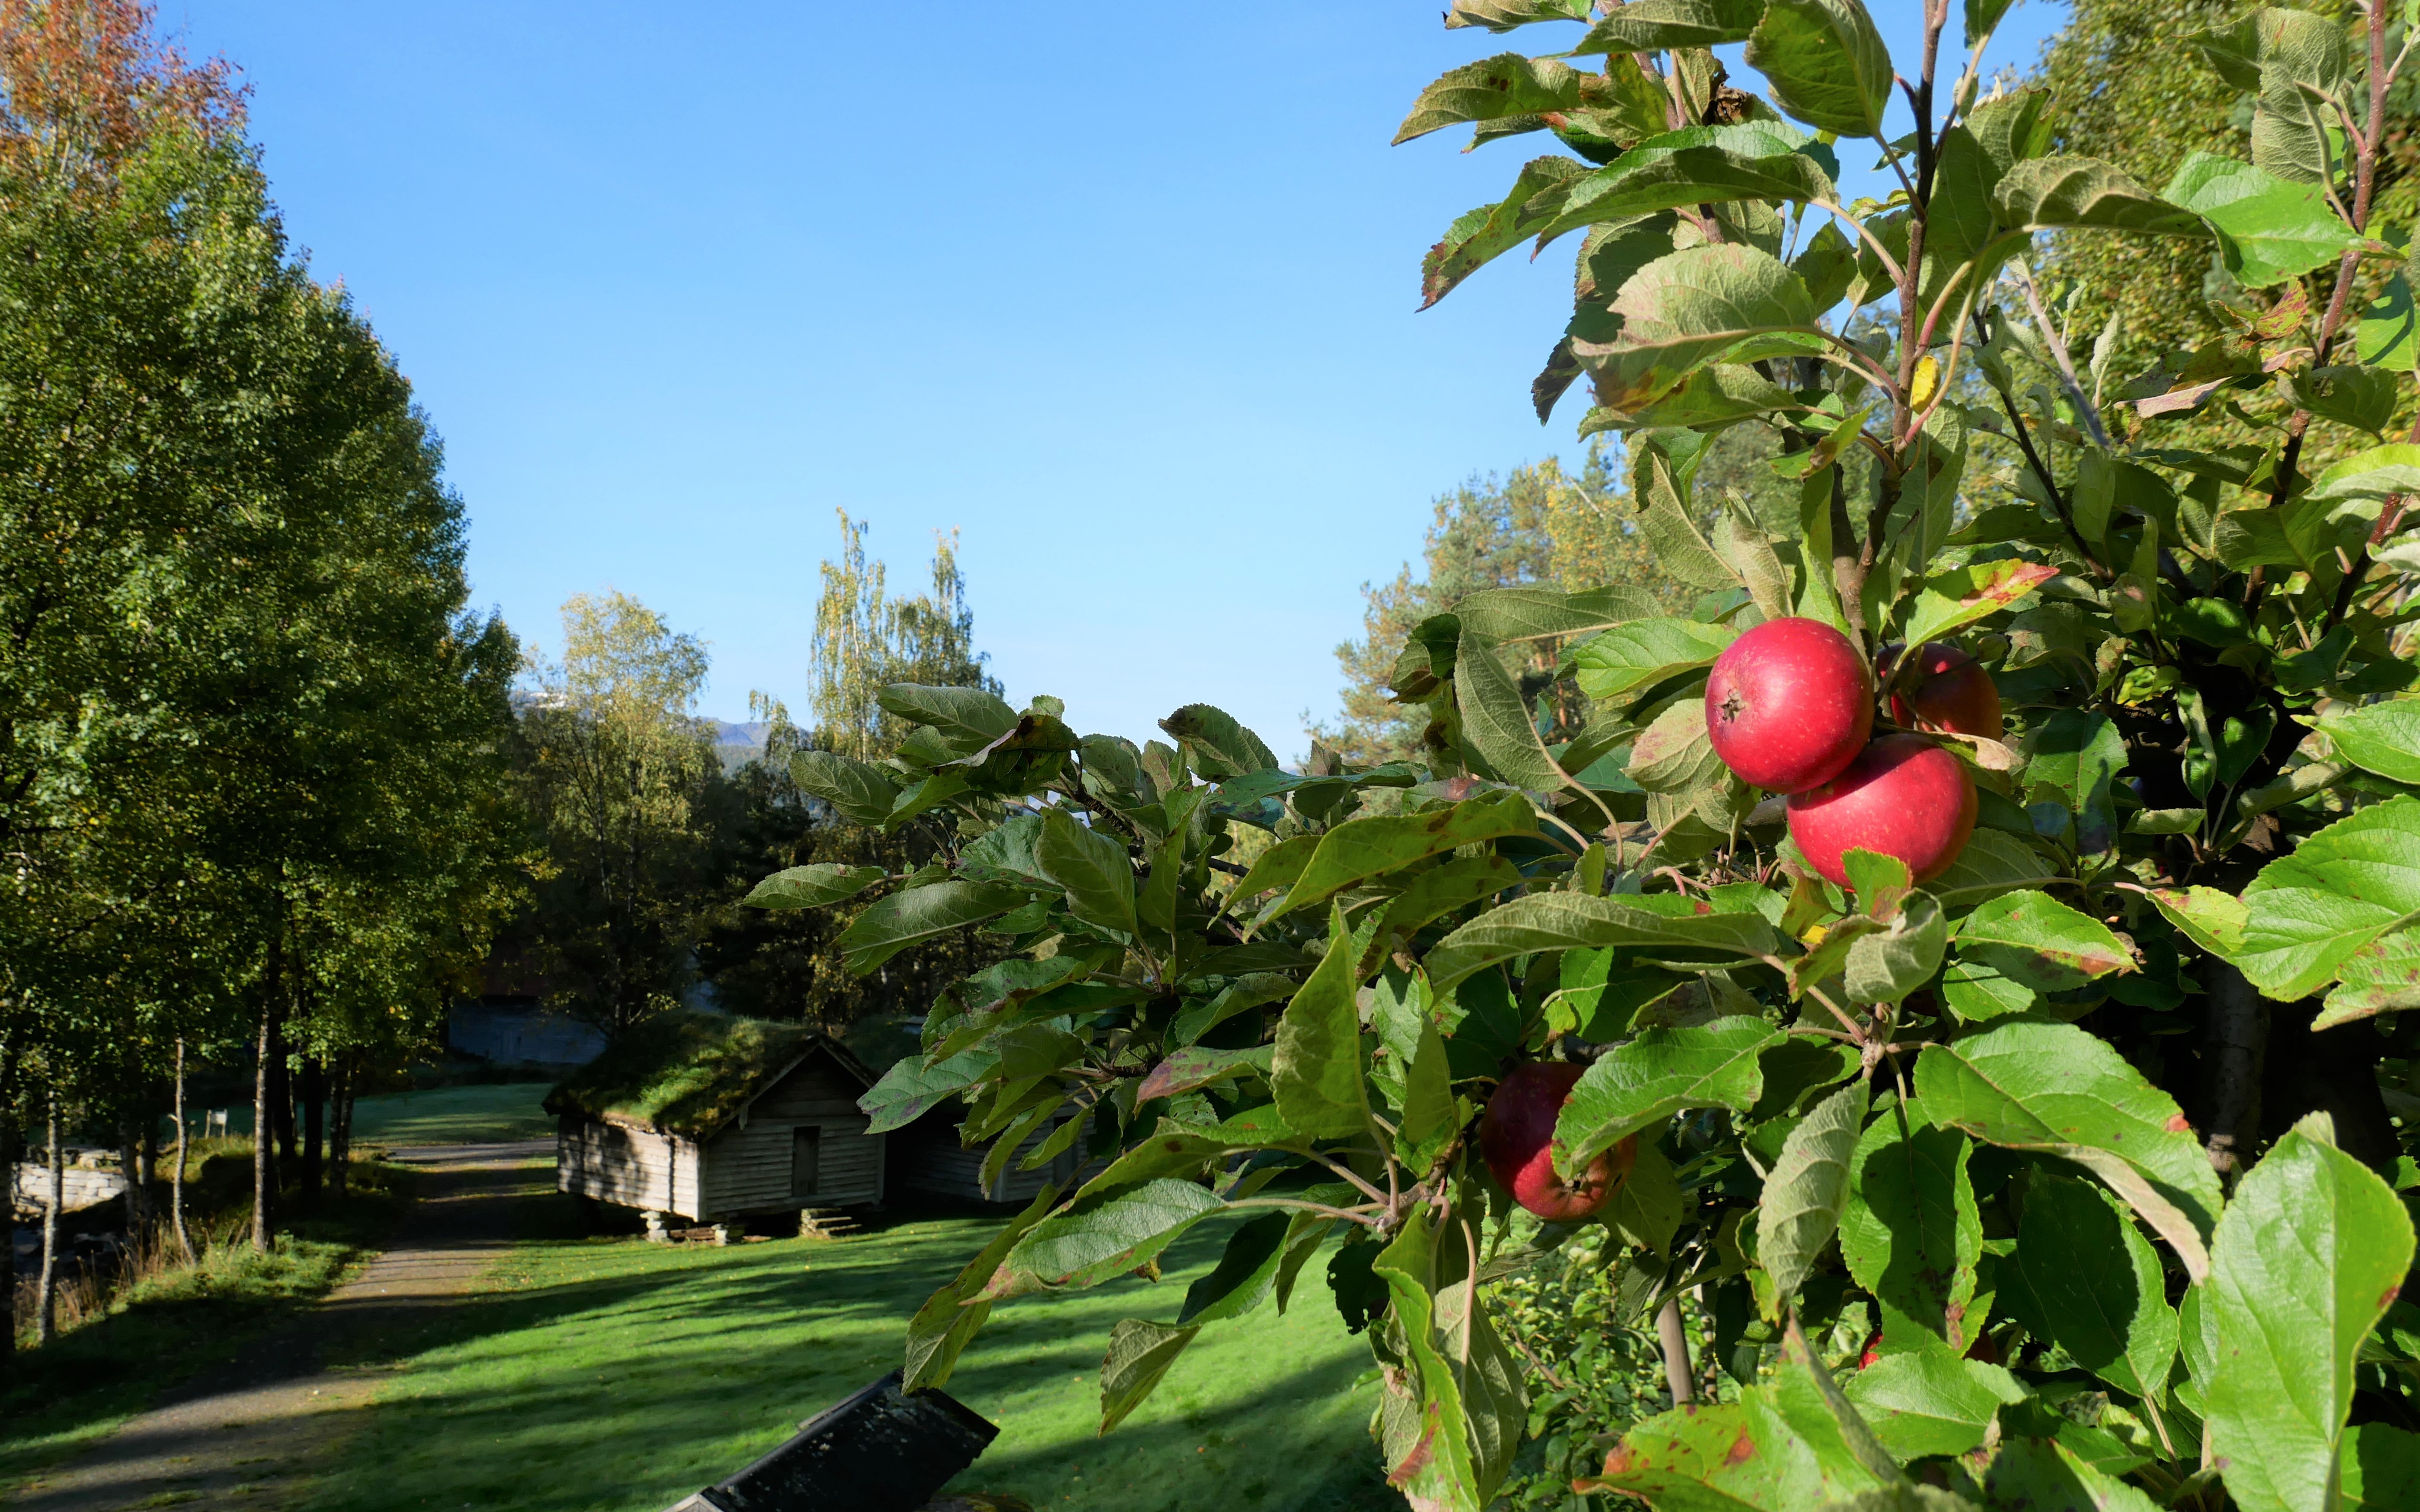 Eple på epletre i friluftsmuseet, i bakgrunnen er det grønne trær og gamle hus.